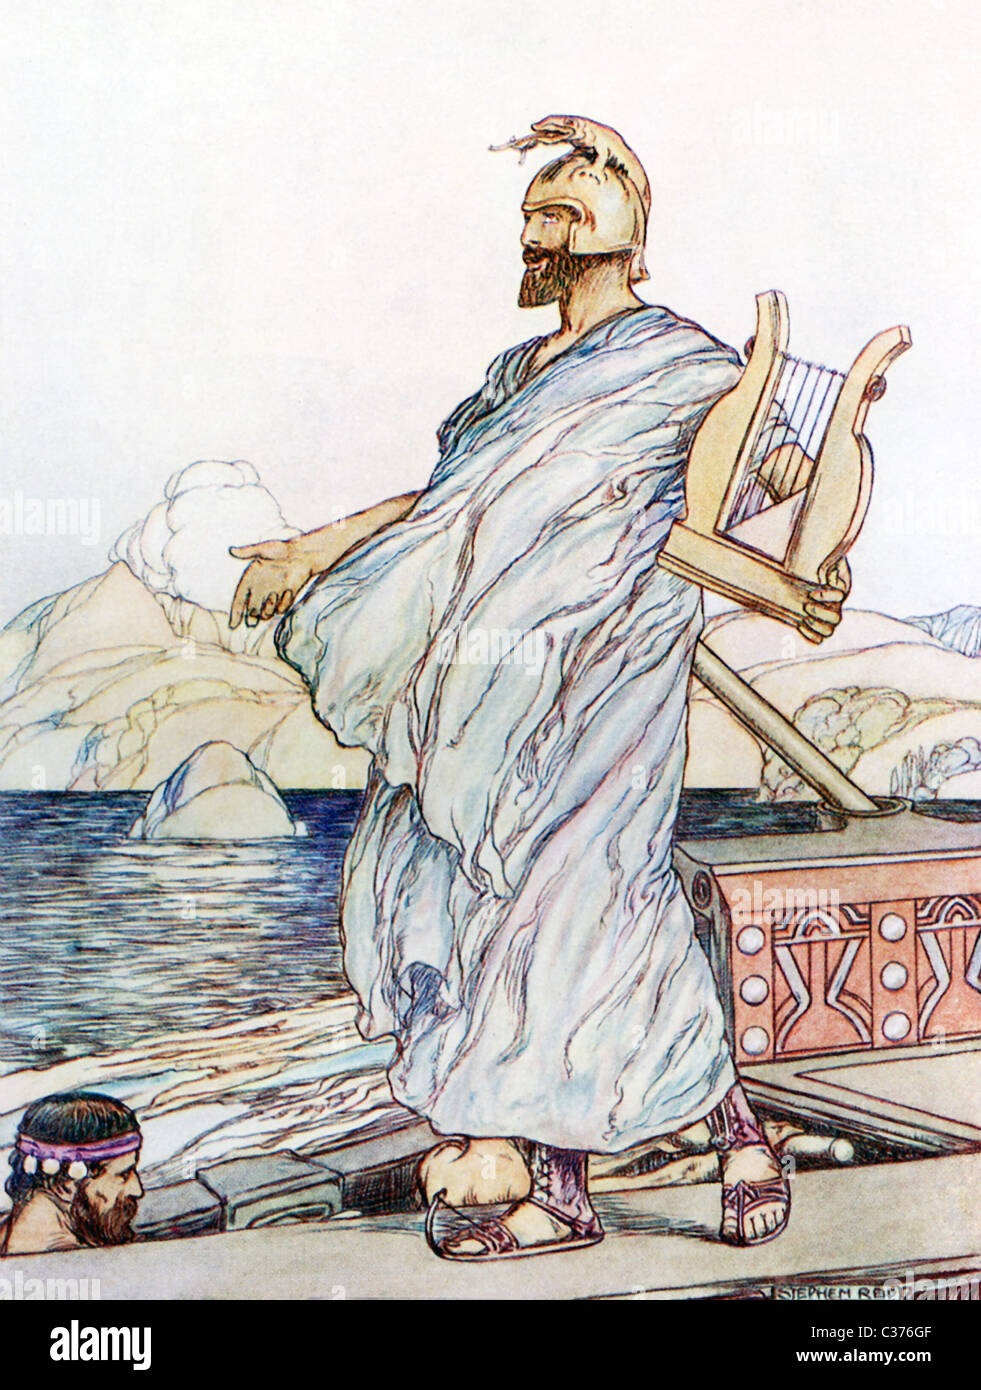 Come gli Argonauti superato le isole rocciose con le sirene, il cui canto attirati tutti che passava, Orpheus ha suonato la sua lira. Foto Stock